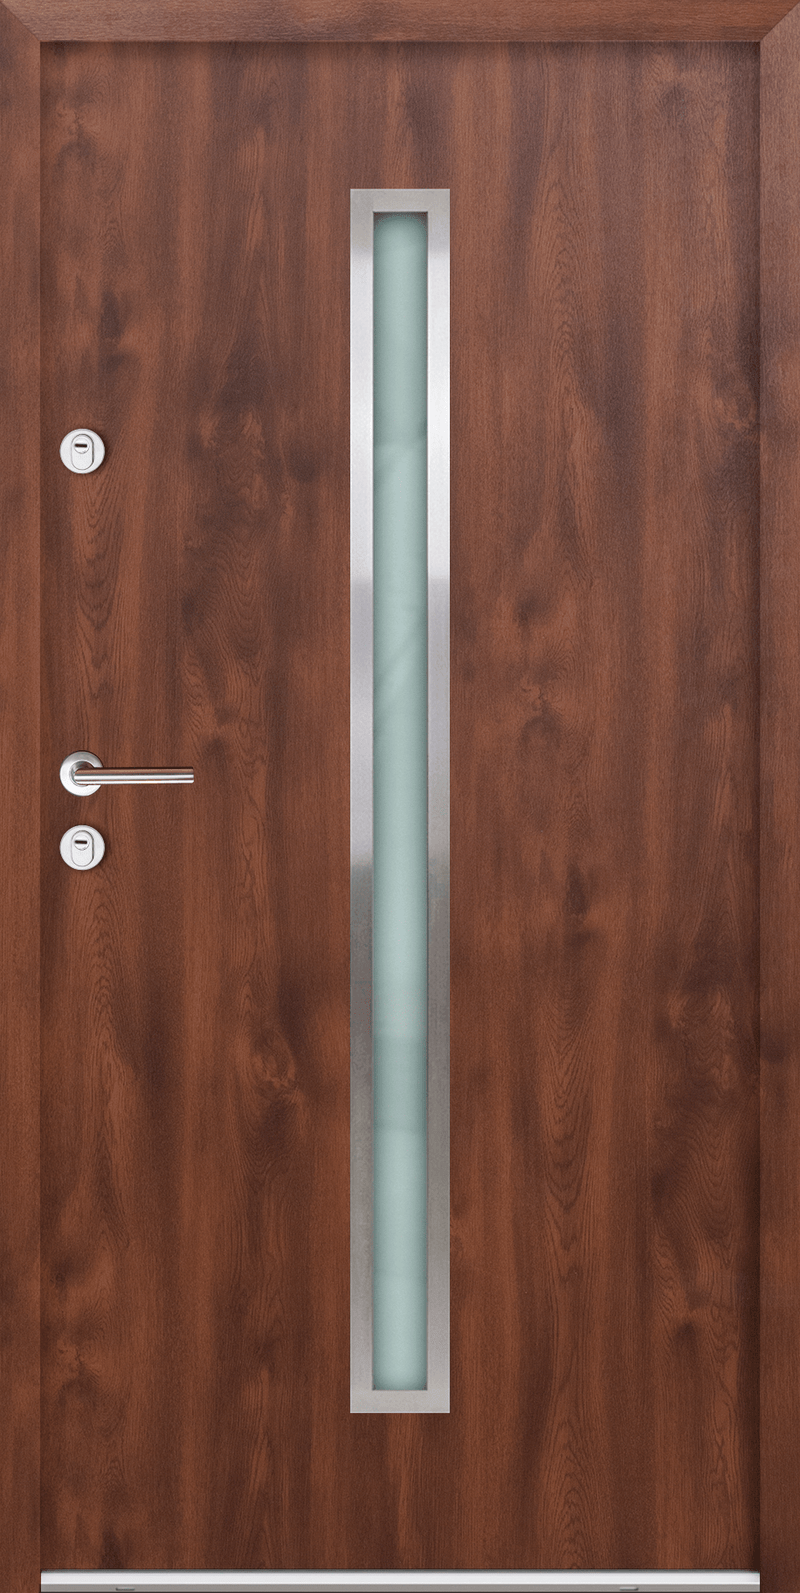 Turenwerke ATU 68 Design 501 Steel Door - Walnut